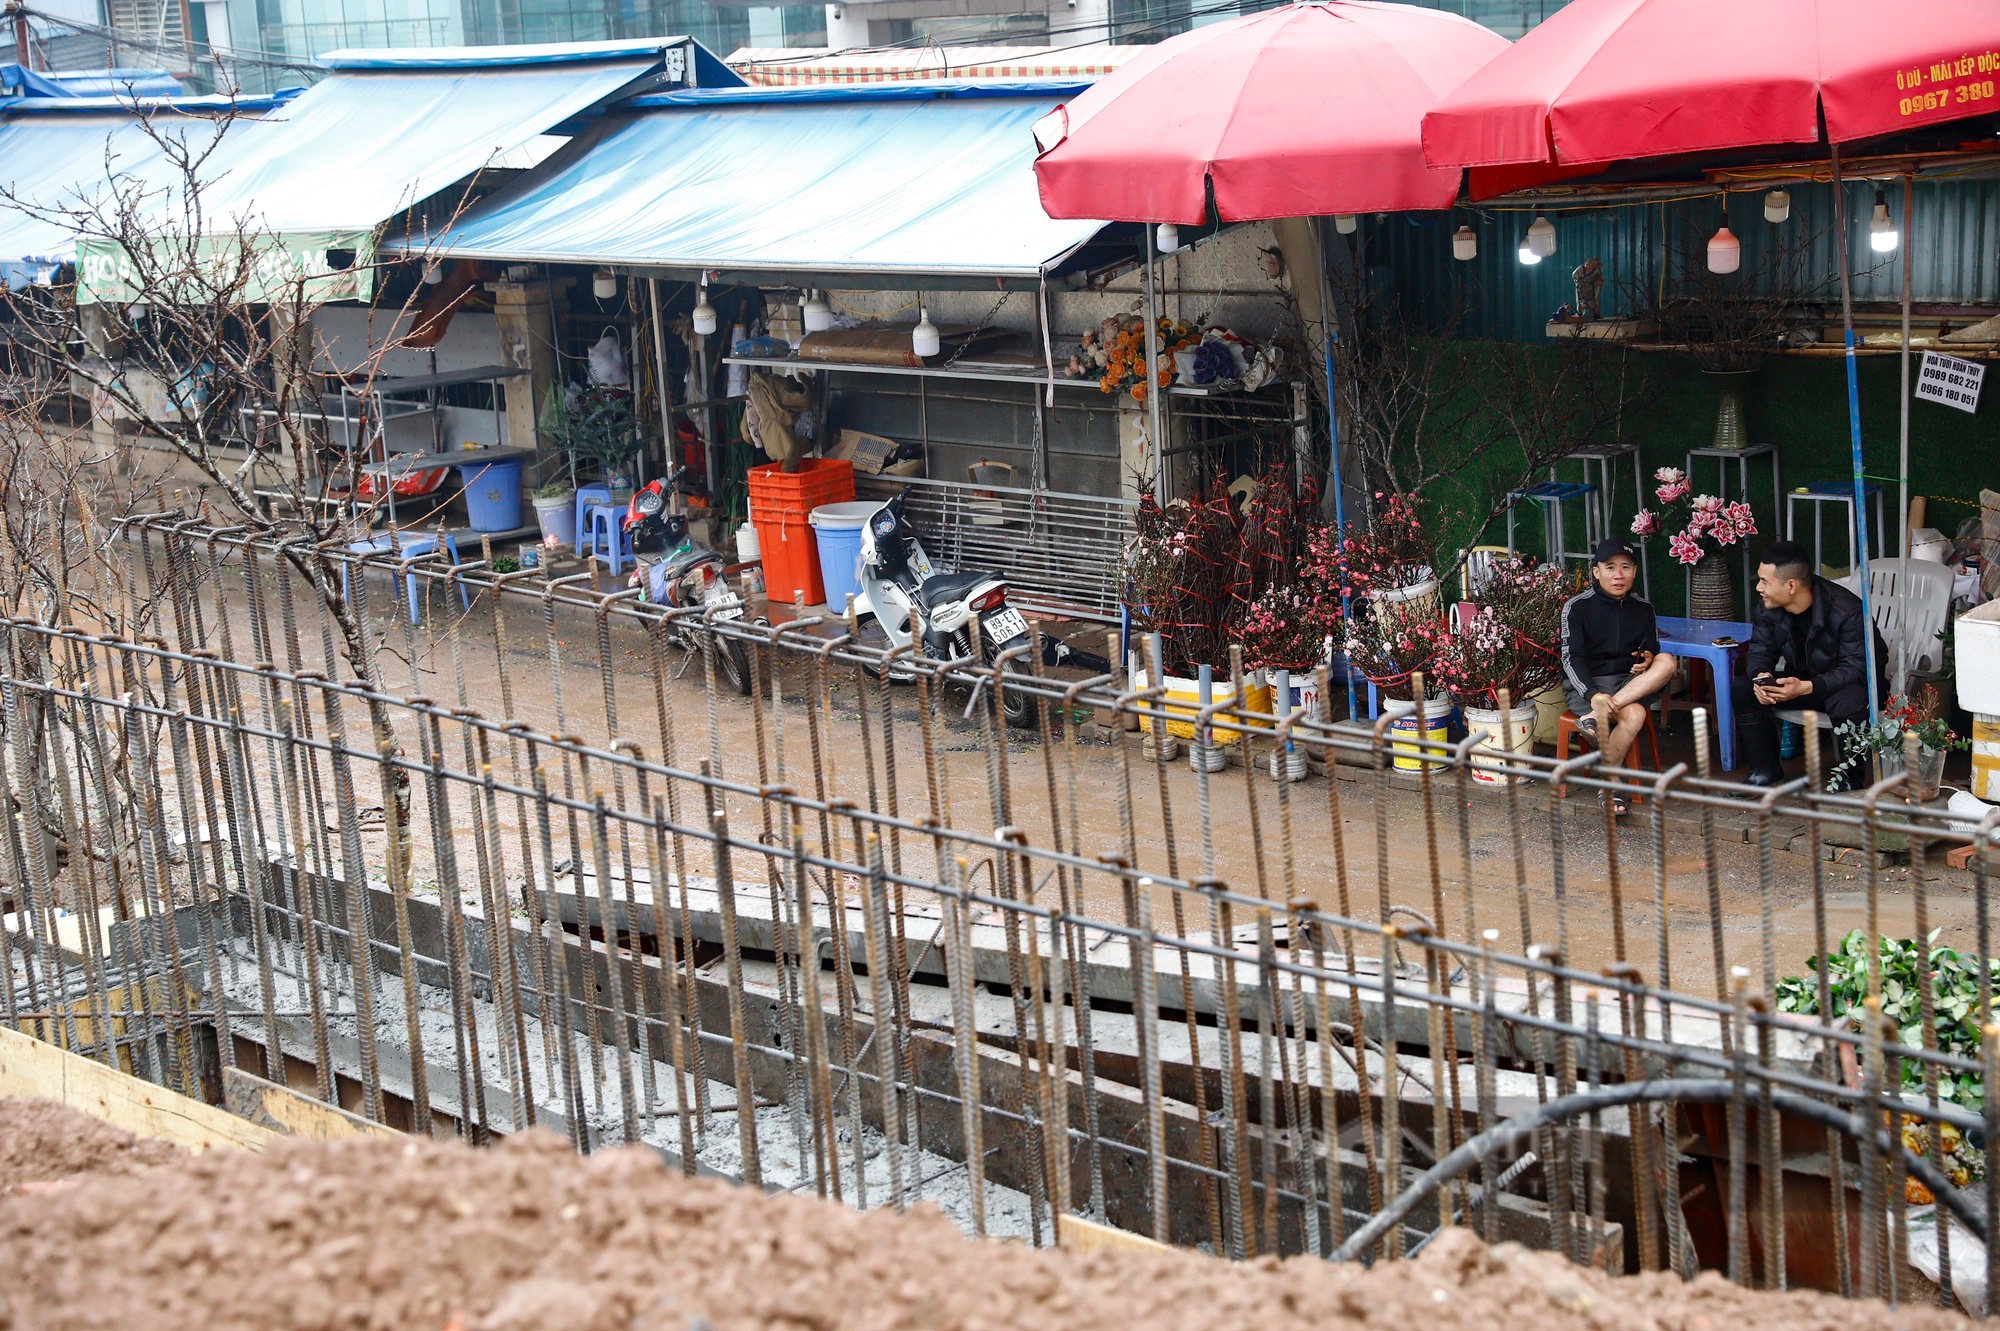 Ôtô sập gầm, xe máy và người đi bộ lội nước qua dự án dài 3,7 km trị giá 815 tỷ đồng ở Hà Nội- Ảnh 13.